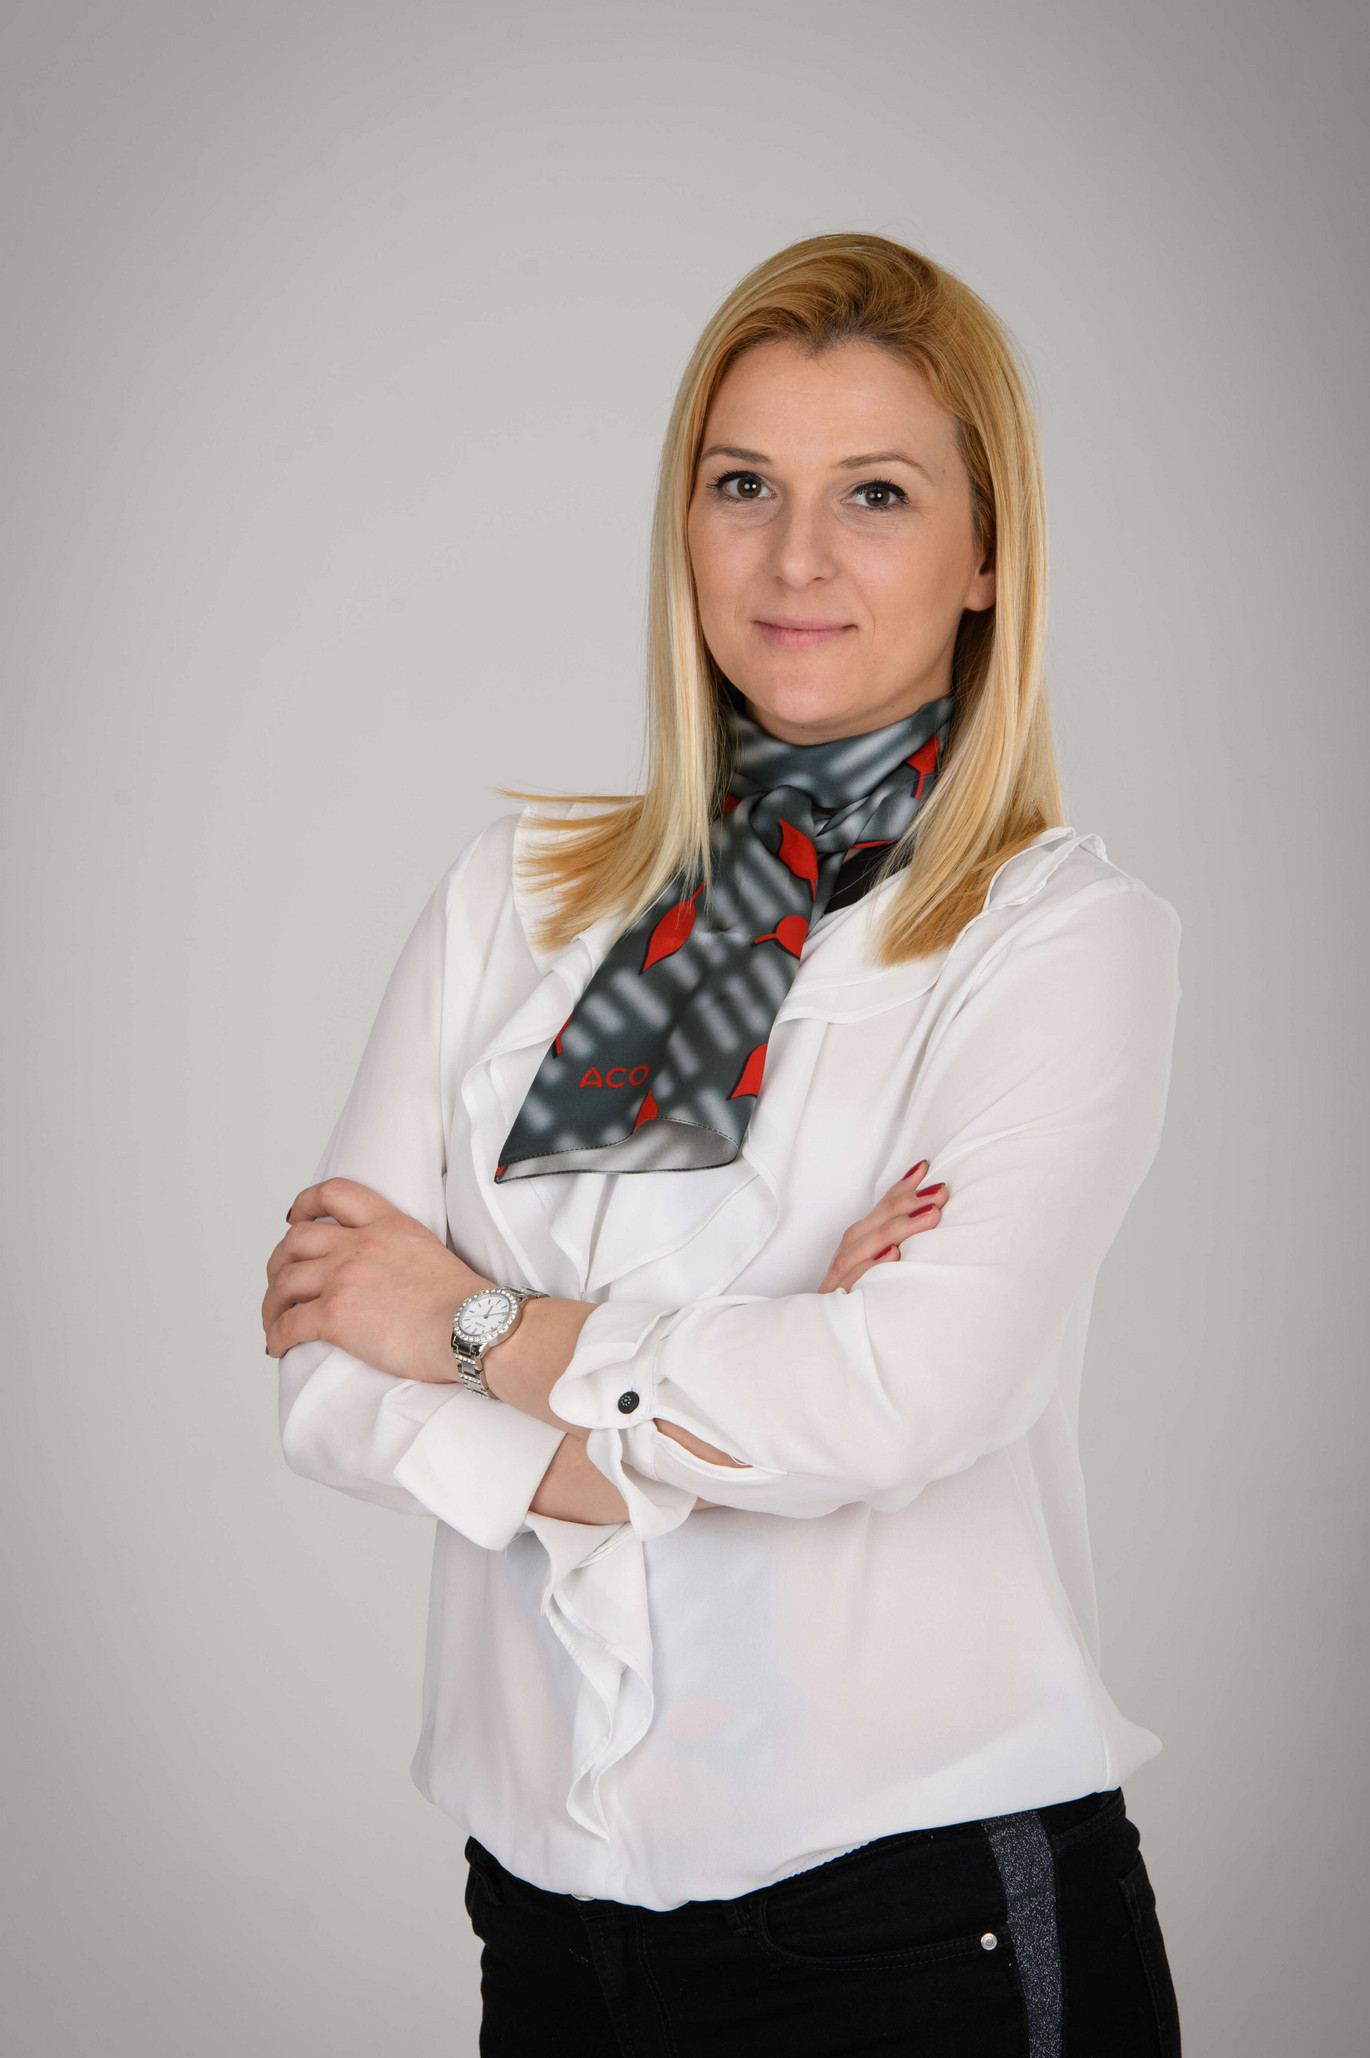 Tanja Dobrijević - ACO Serbia and Montenegro kontakt